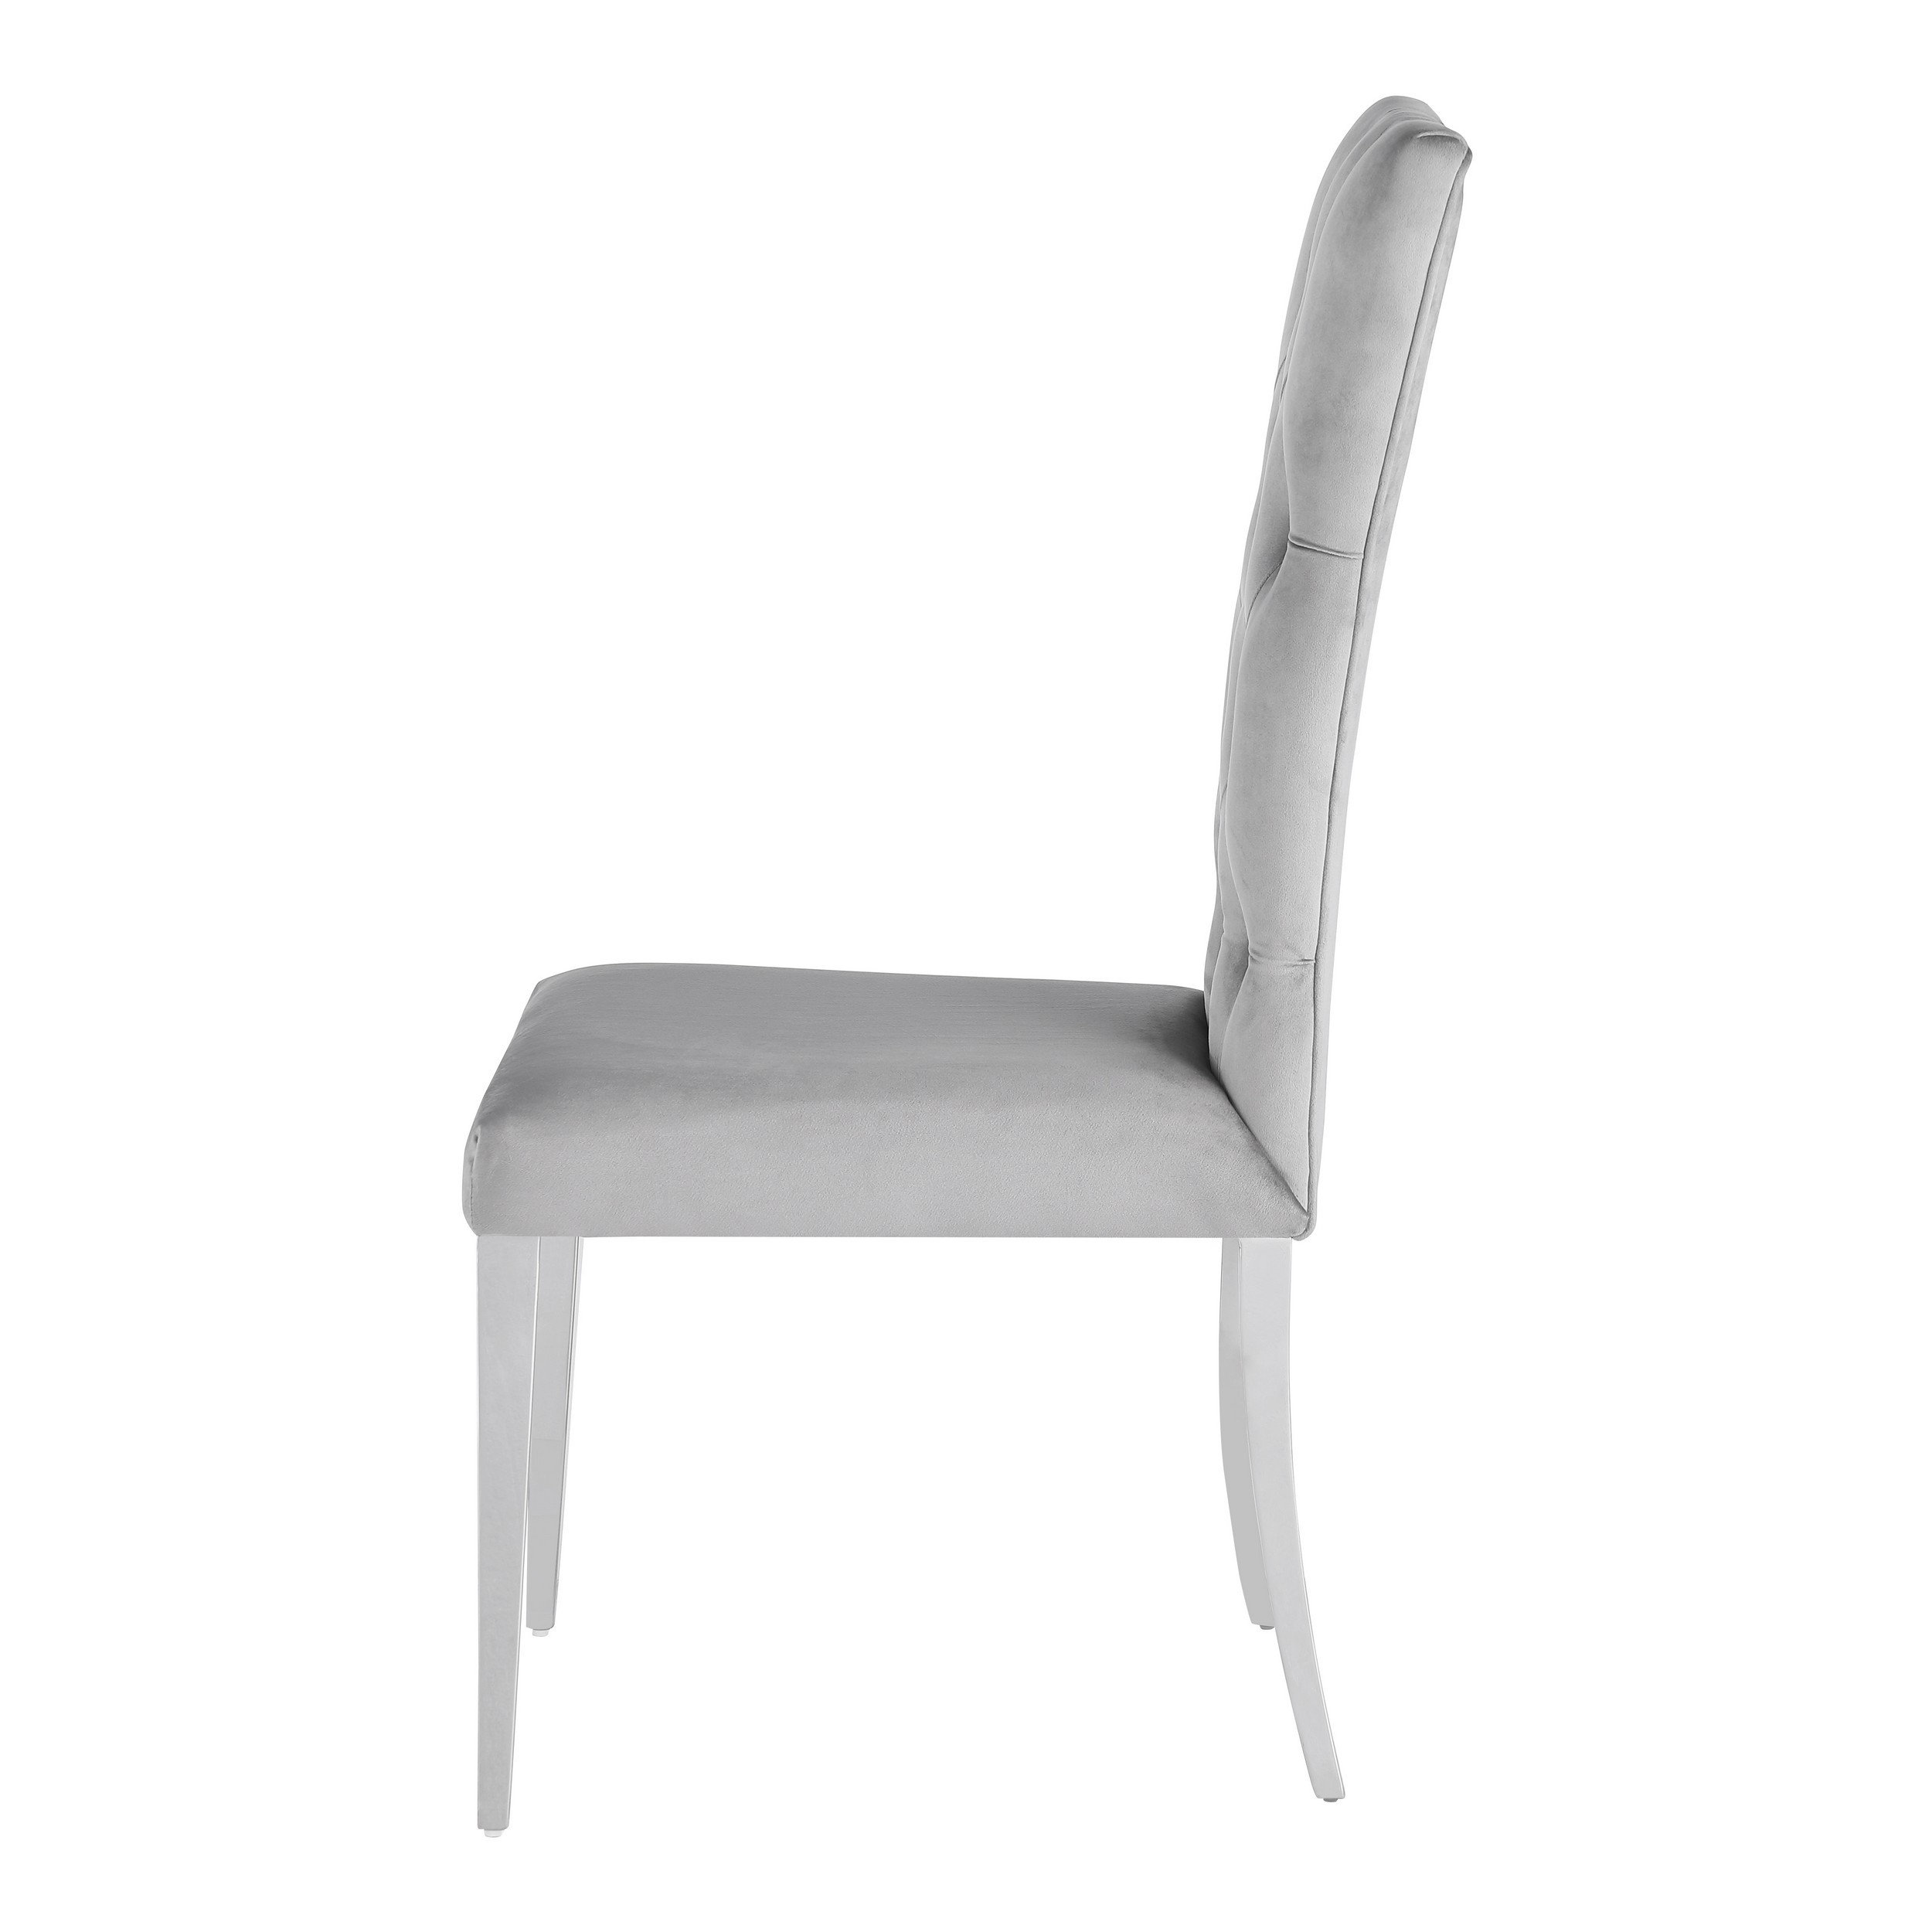 Kery 20 Inch Set Of 2 Side Chairs, Gray Velvet, Tall Flared Tufted Back- Saltoro Sherpi